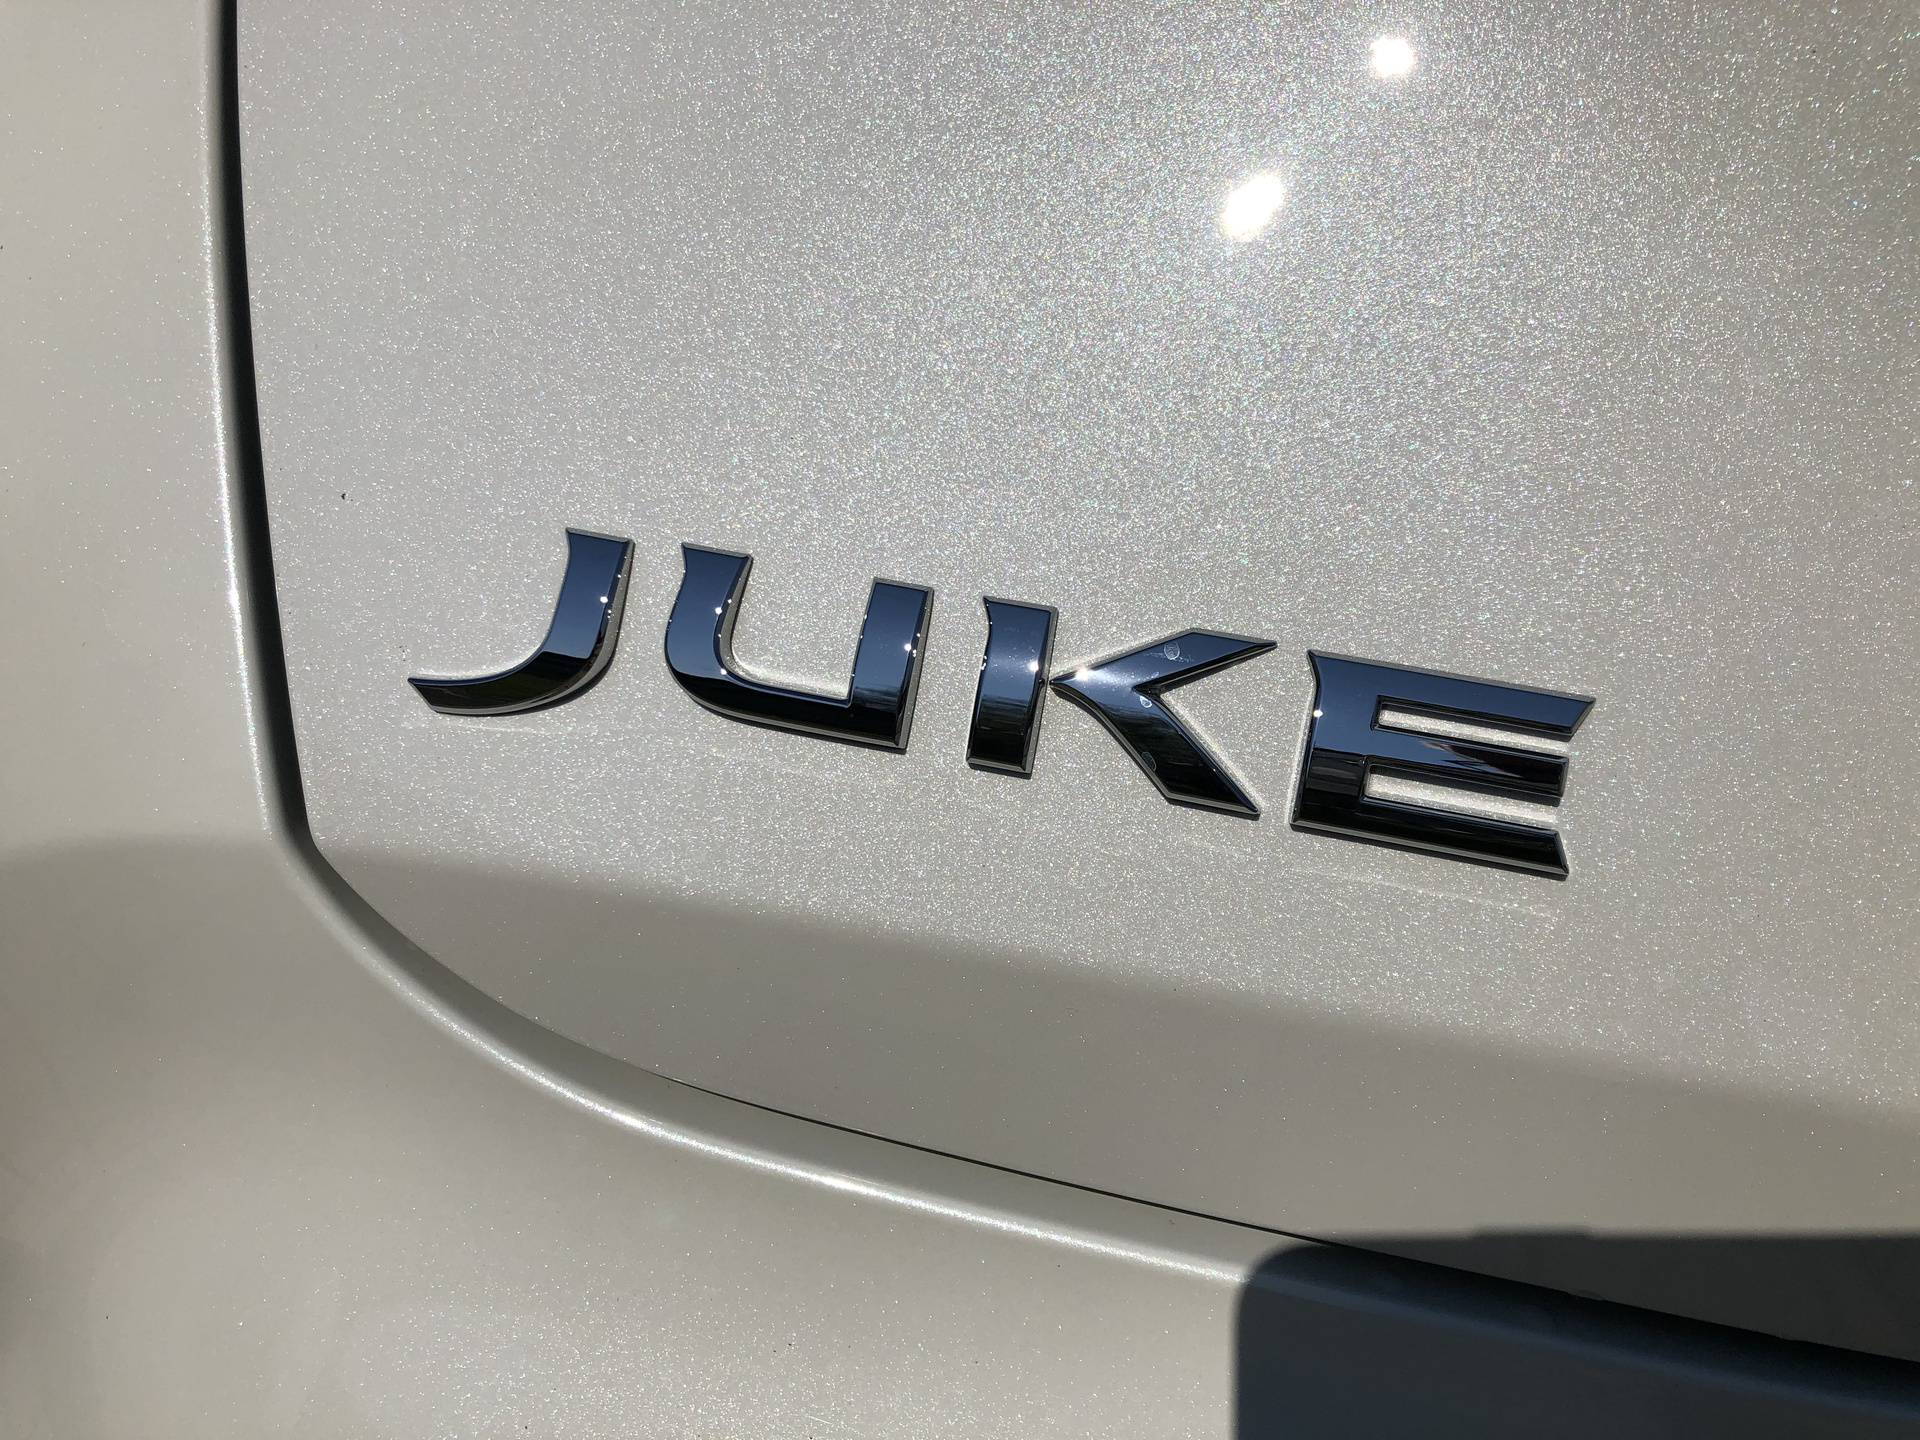 Novi Juke je također svojeglav, ali je mnogo odmjereniji auto